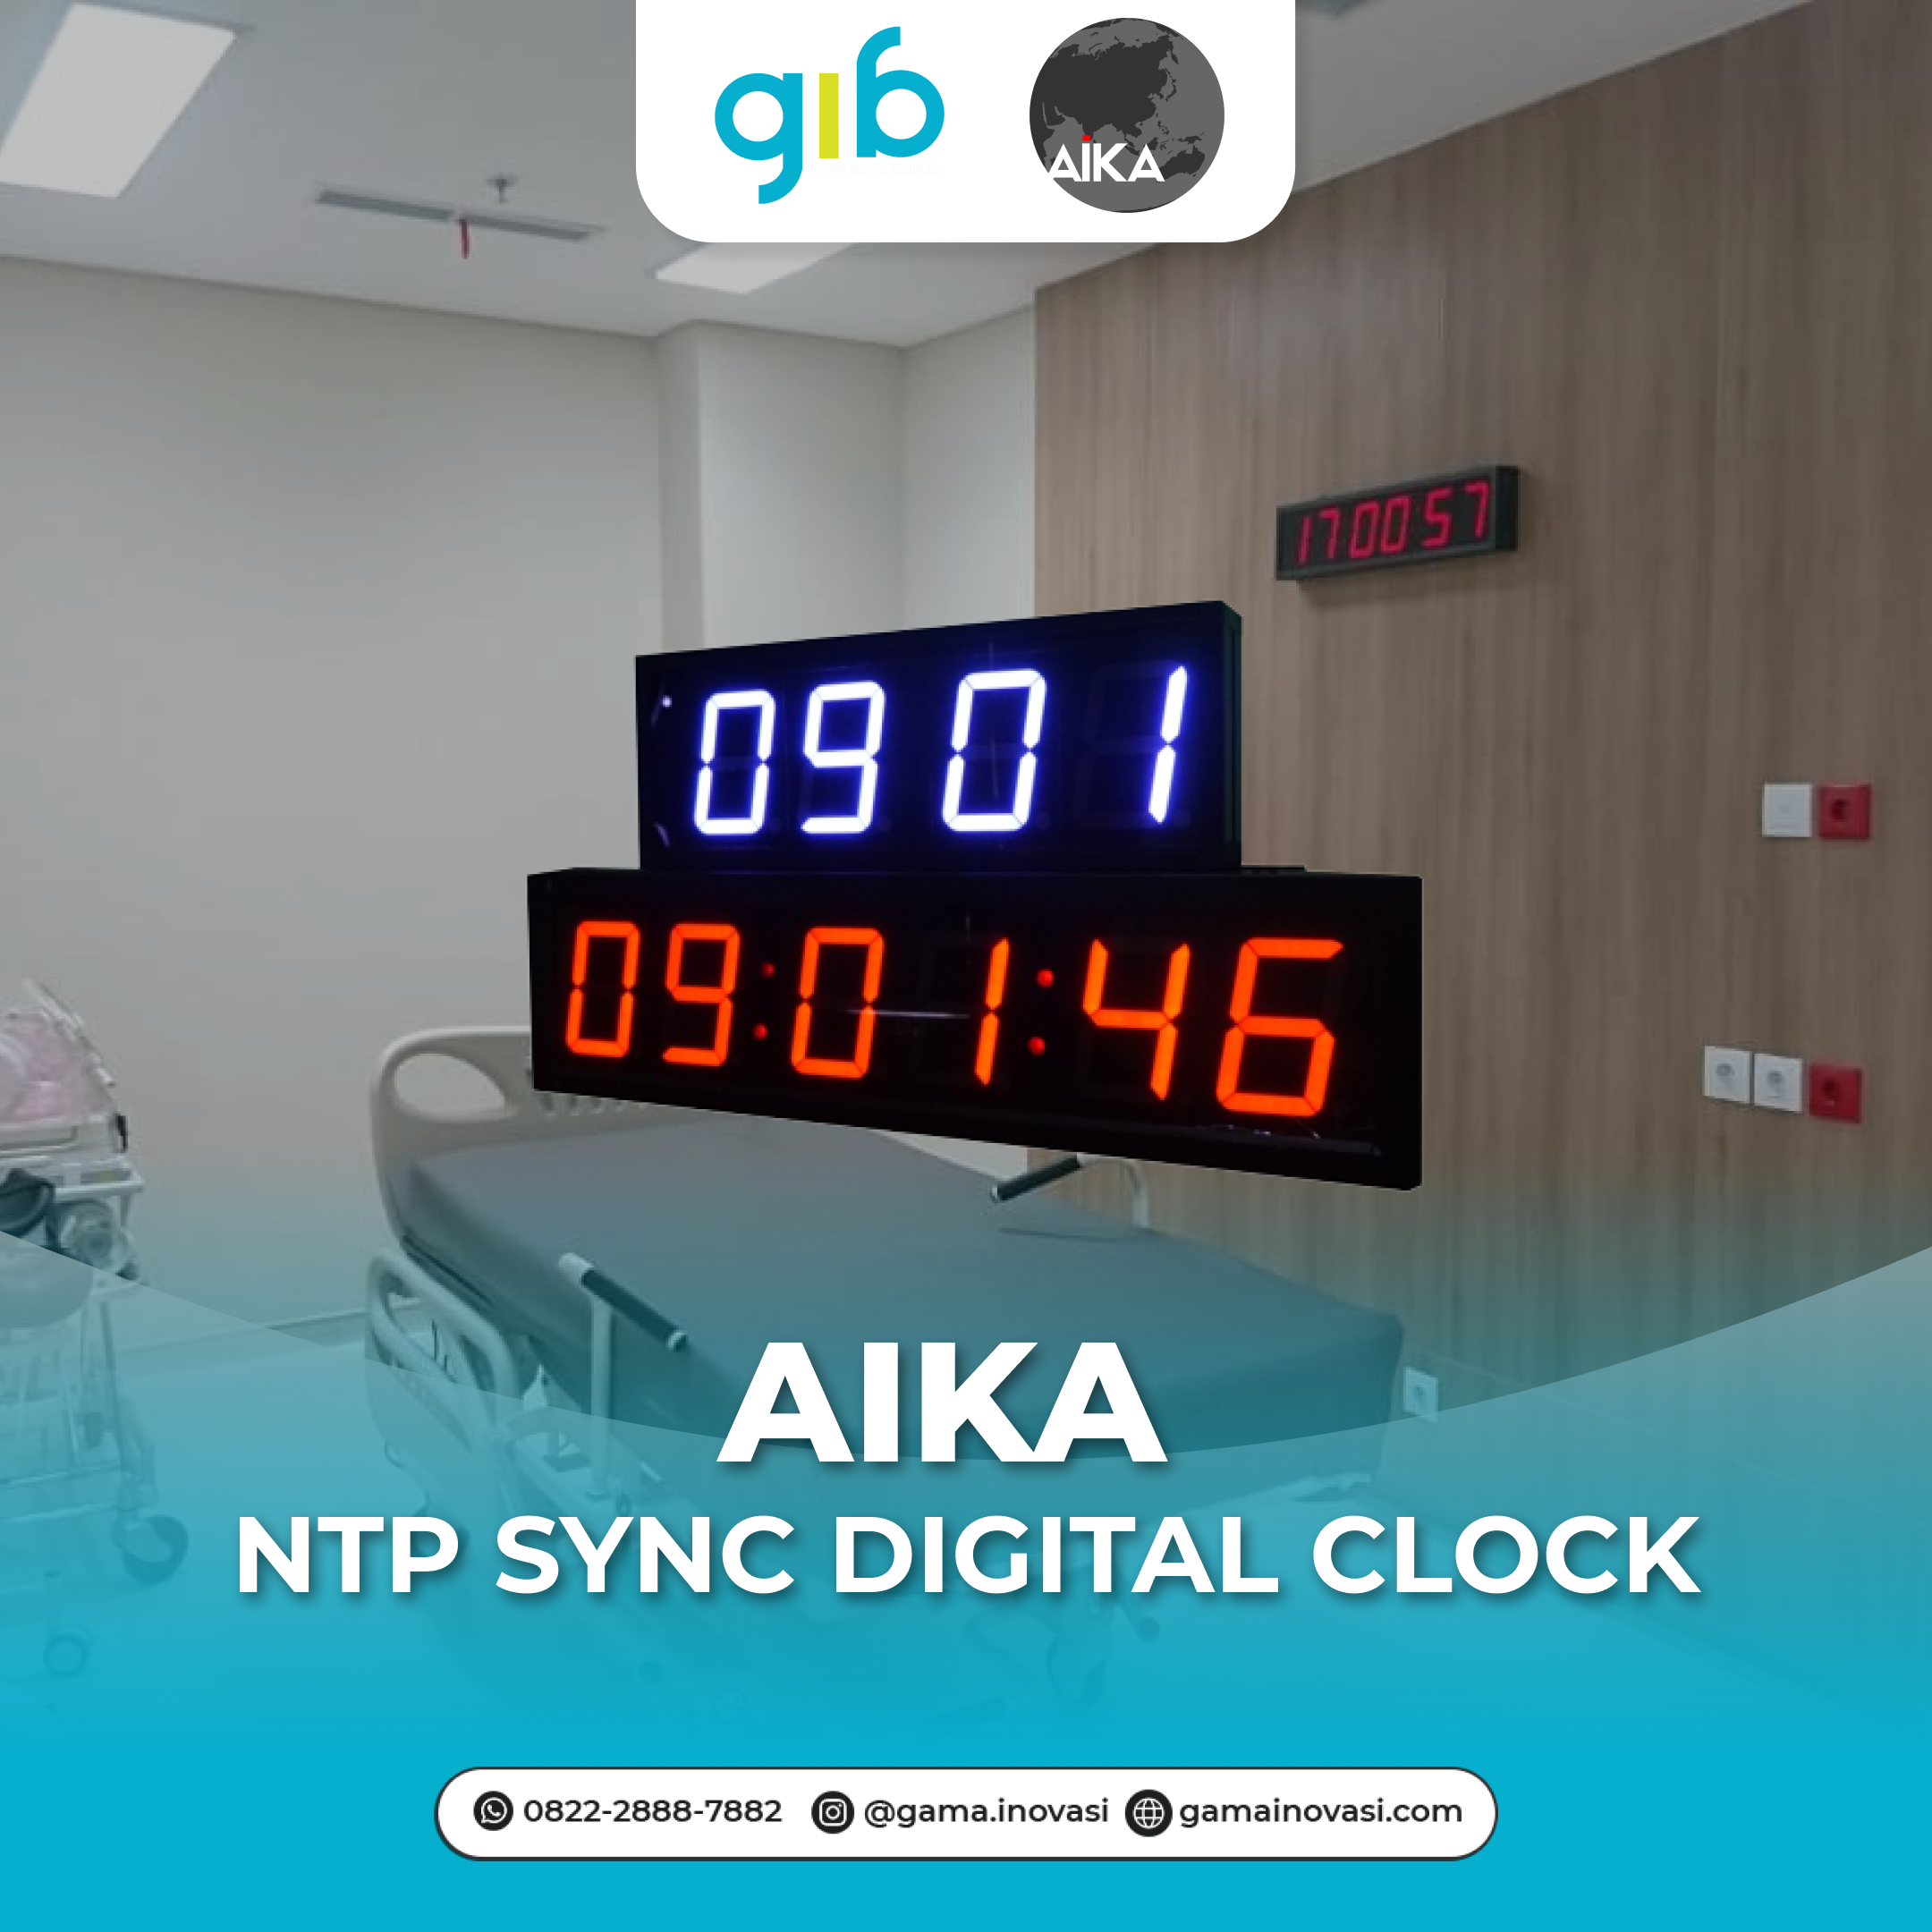 AIKA: NTP Sync Digital Clock